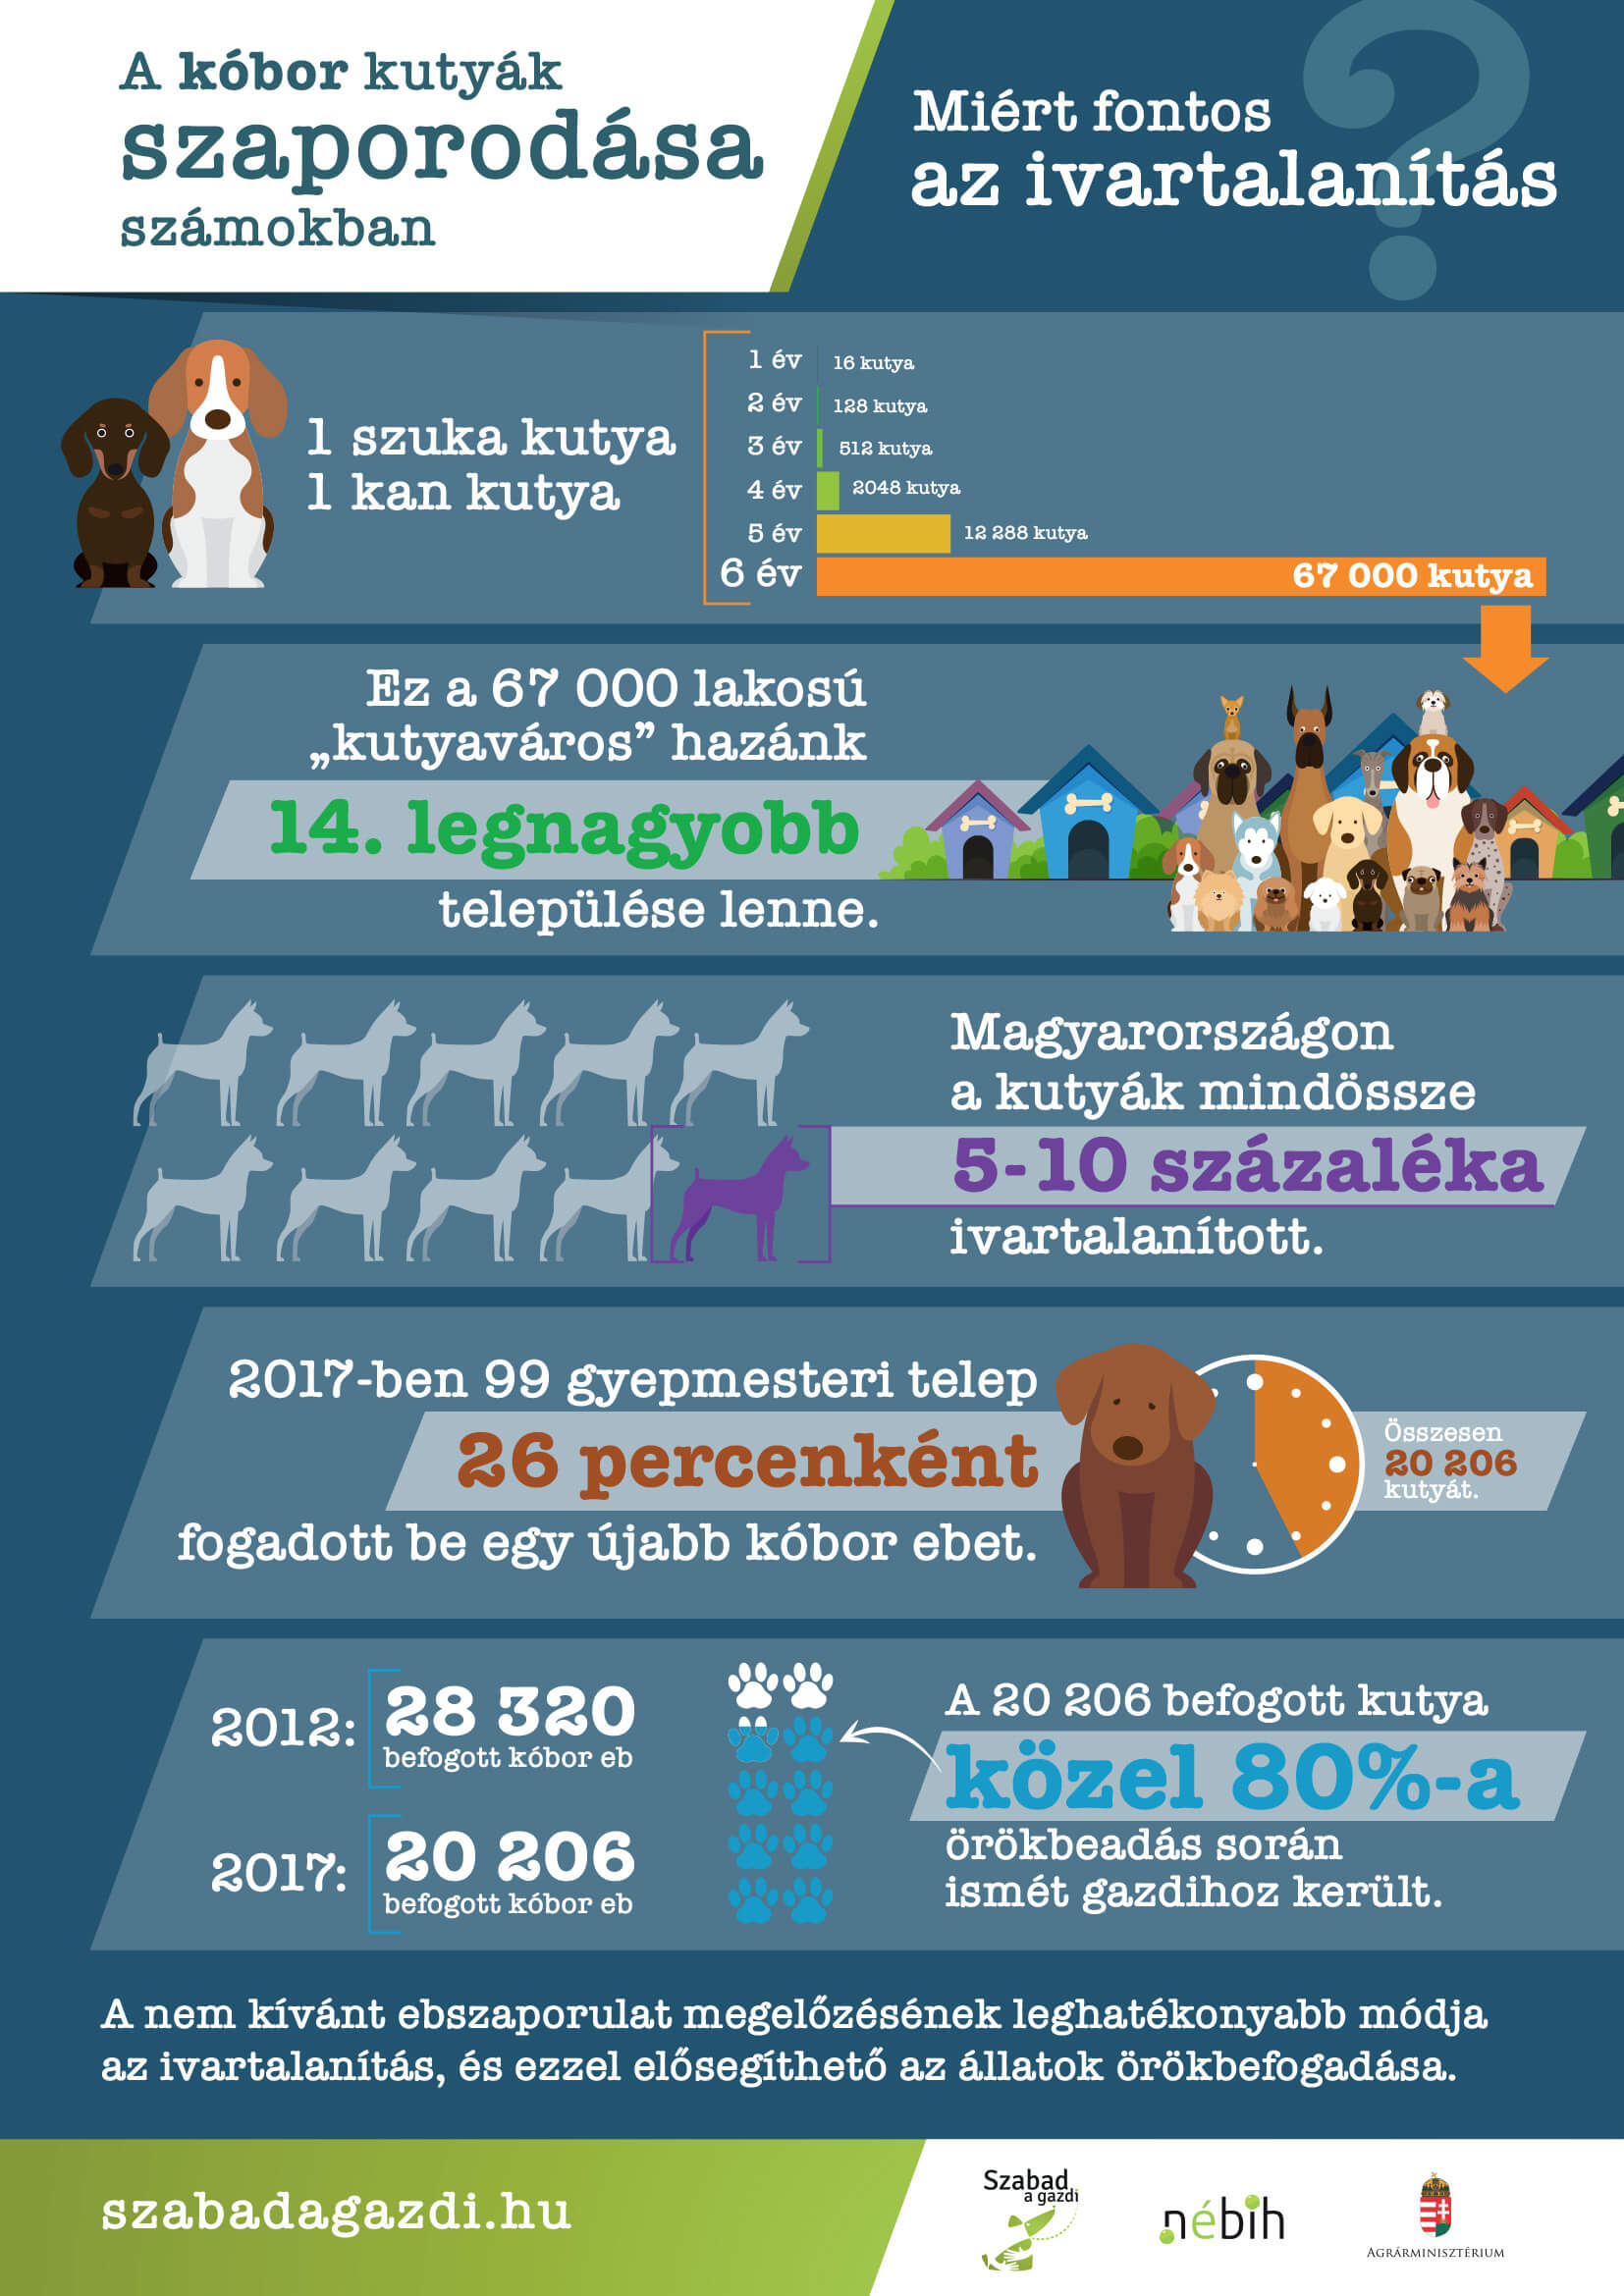 a 6. ábrán látható infografika a kóbor kutyák szaporodását mutatja be számok segítségével. Címe: Miért fontos az ivartalanítás? Az infografikán a következő számadatok szerepelnek: - 1 kan kutya és 1 szuka kutya párosodásának következményeként 6 év alatt 67 ezer egyed születhet. - A 67 ezer egyed ugyanakkora lélekszám, mint hazánk 14. legnagyobb településének lakosságszáma. - Magyarországon a kutyáknak mindössze 5-10%-a van ivartalanítva. - 2017-ben a hazai 99 gyepmesteri telep 26 percenként fogadott be egy újabb kóbor ebet. - A 2012-ben befogott kóbor ebek száma 28 ezer 320 volt, 2017-ben pedig 20 ezer 206. - 2017-ben a befogott kóbor ebek közel 80%-a került gazdihoz. - A nem kívánt ebszaporulat megelőzésének leghatékonyabb és általunk ismert leghumánusabb módja az ivartalanítás.